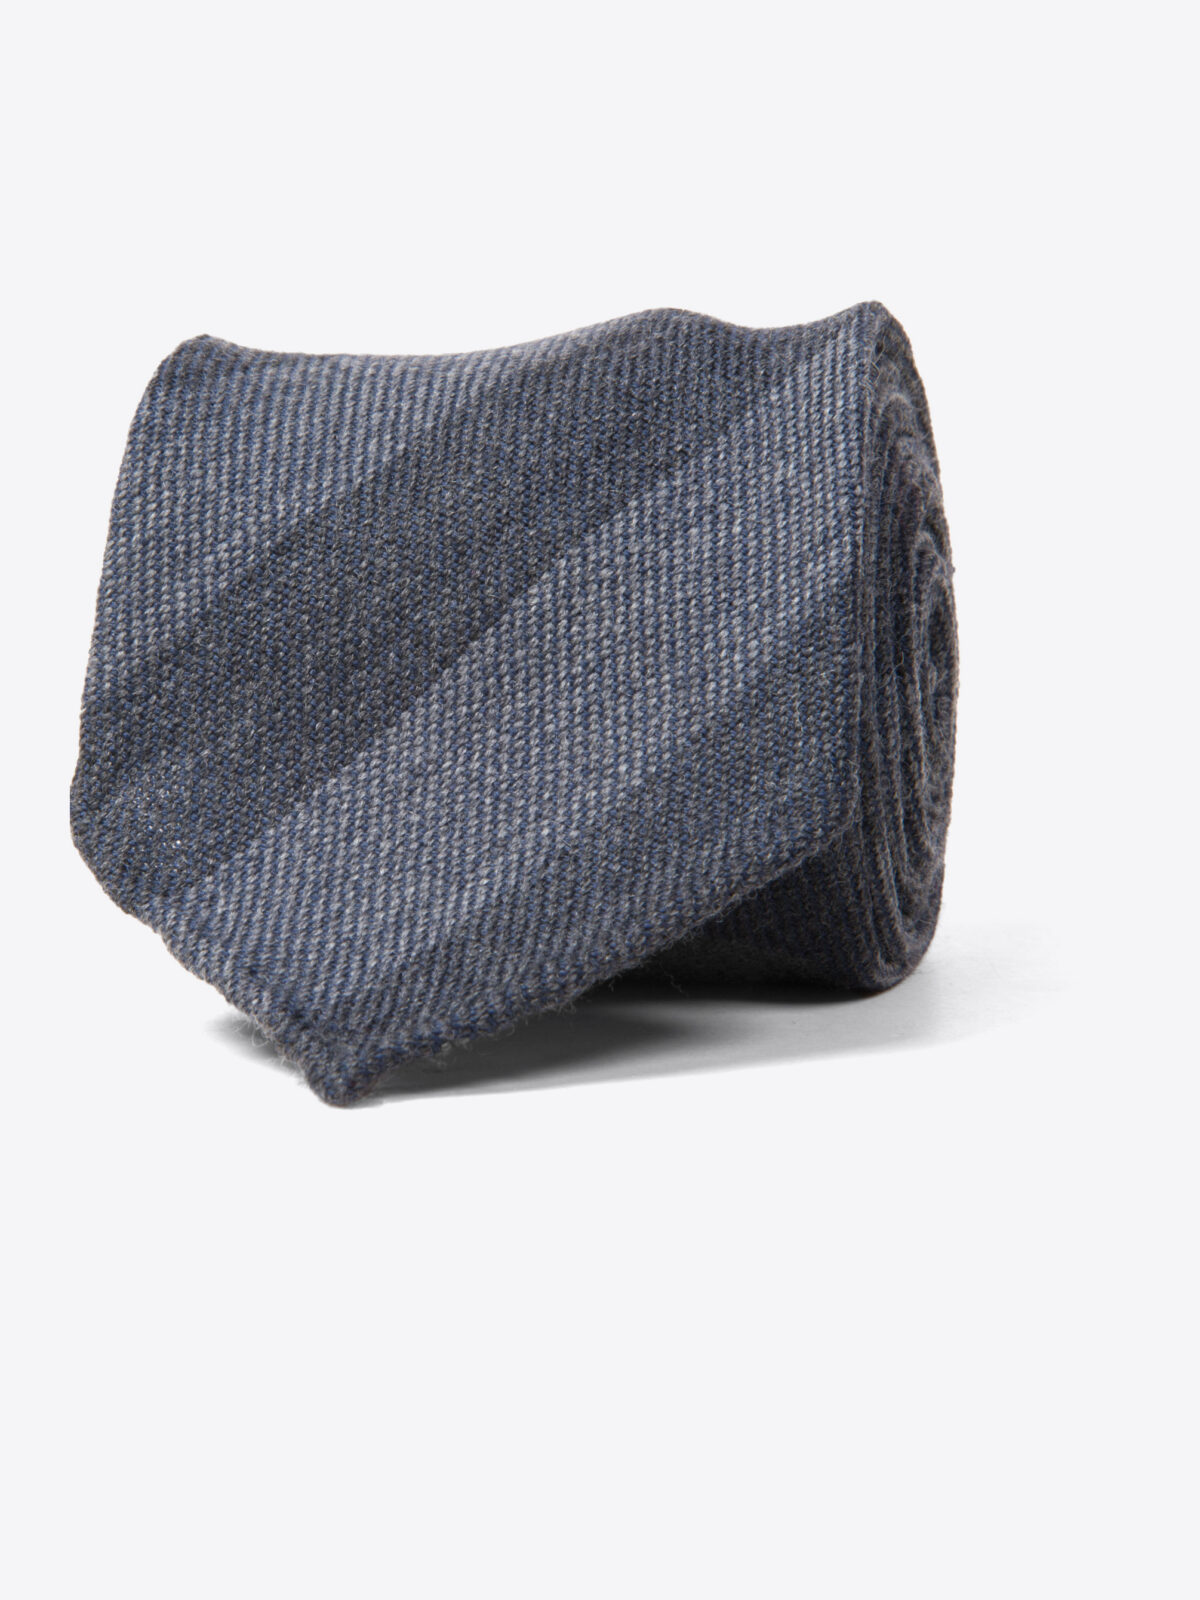 Siena Grey Stripe Wool Tie